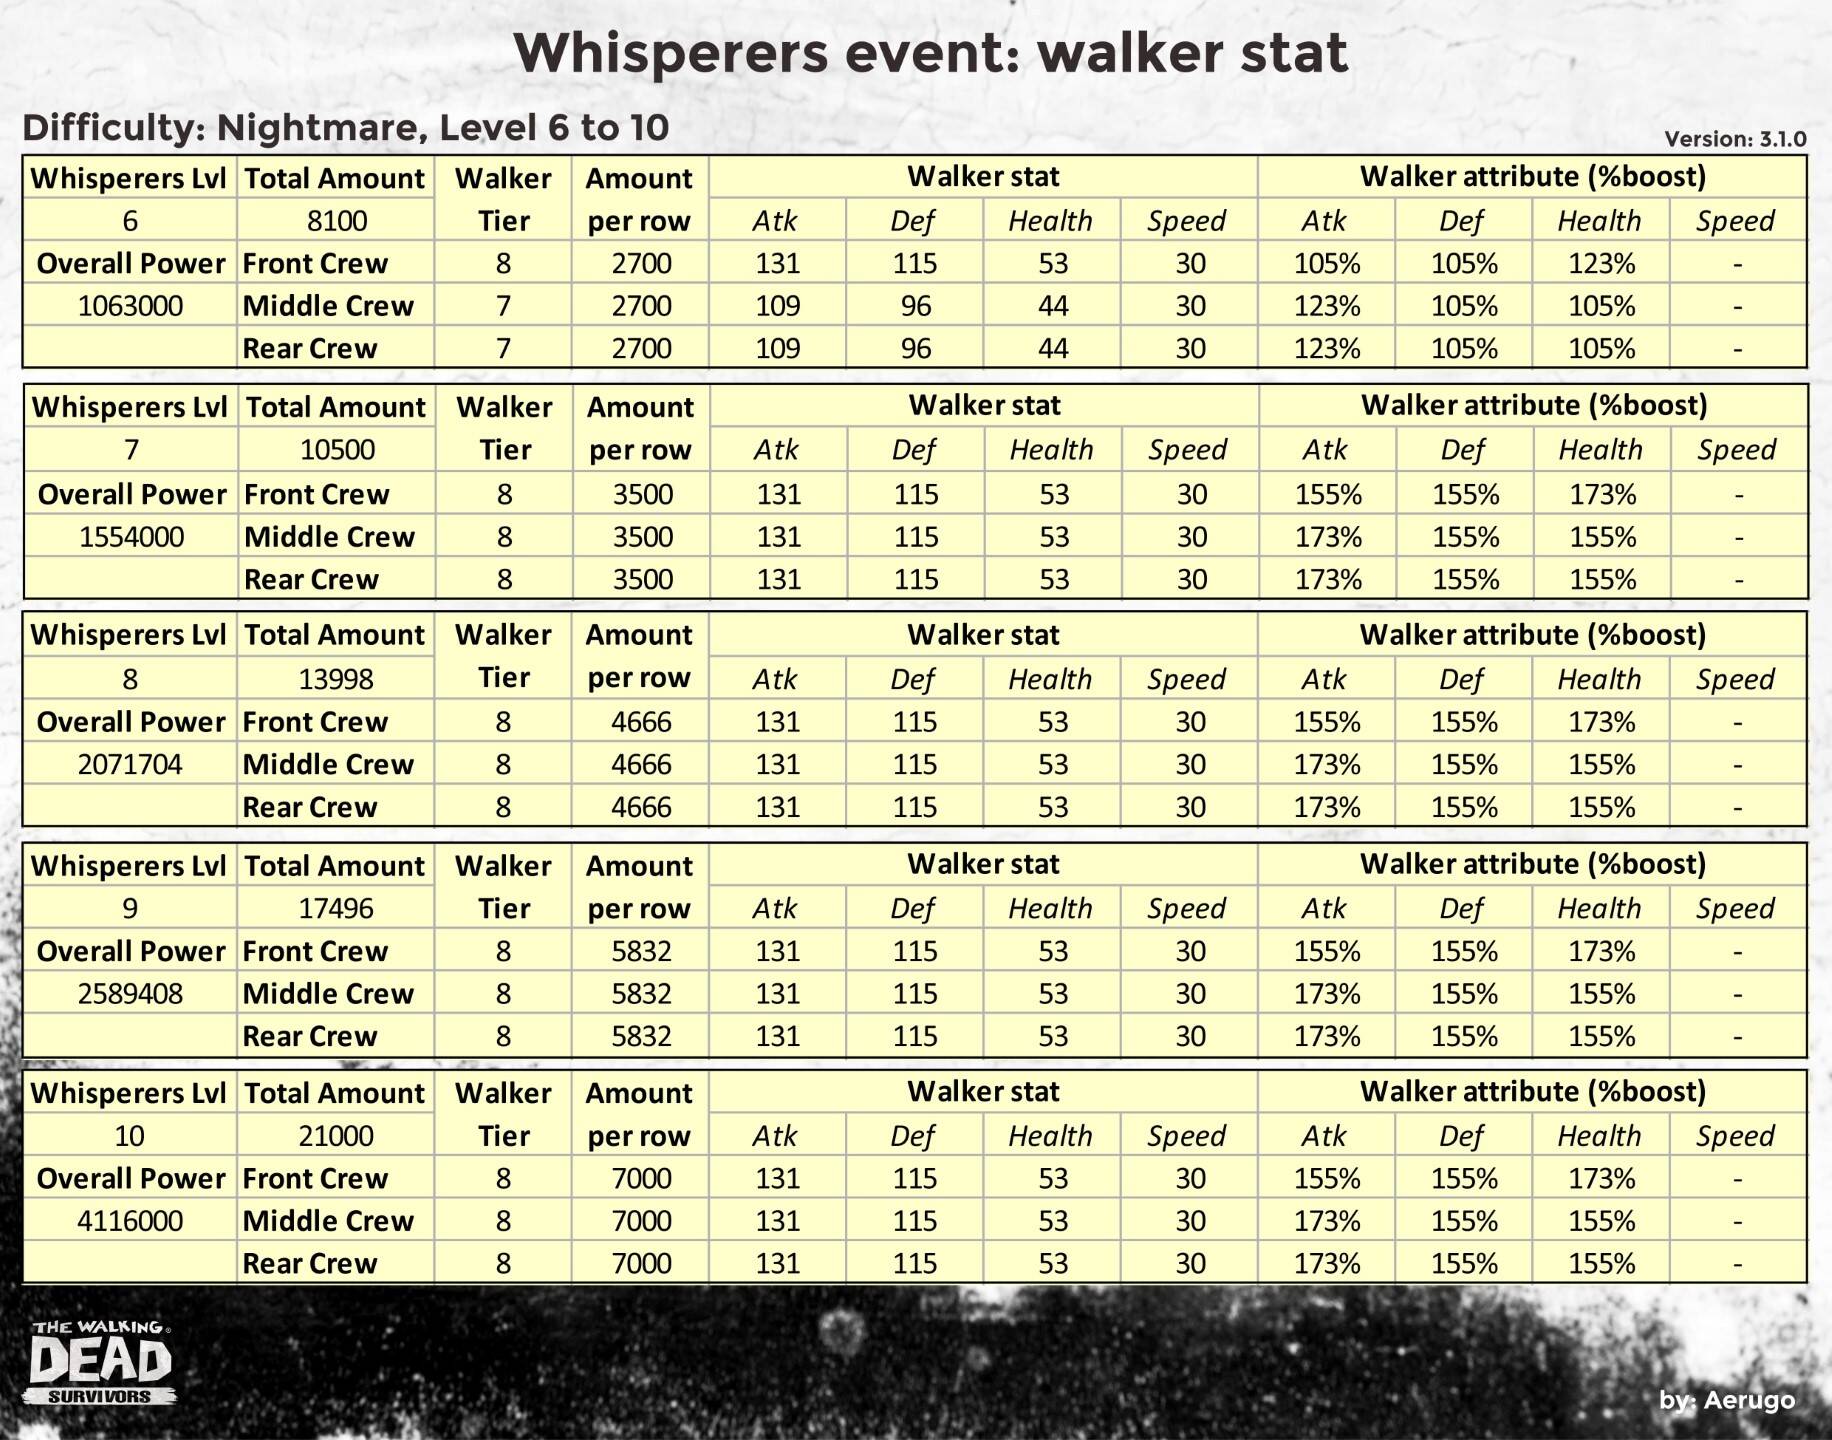 Whisperers_walkerstat_v3.1.0_part14 (1).jpg